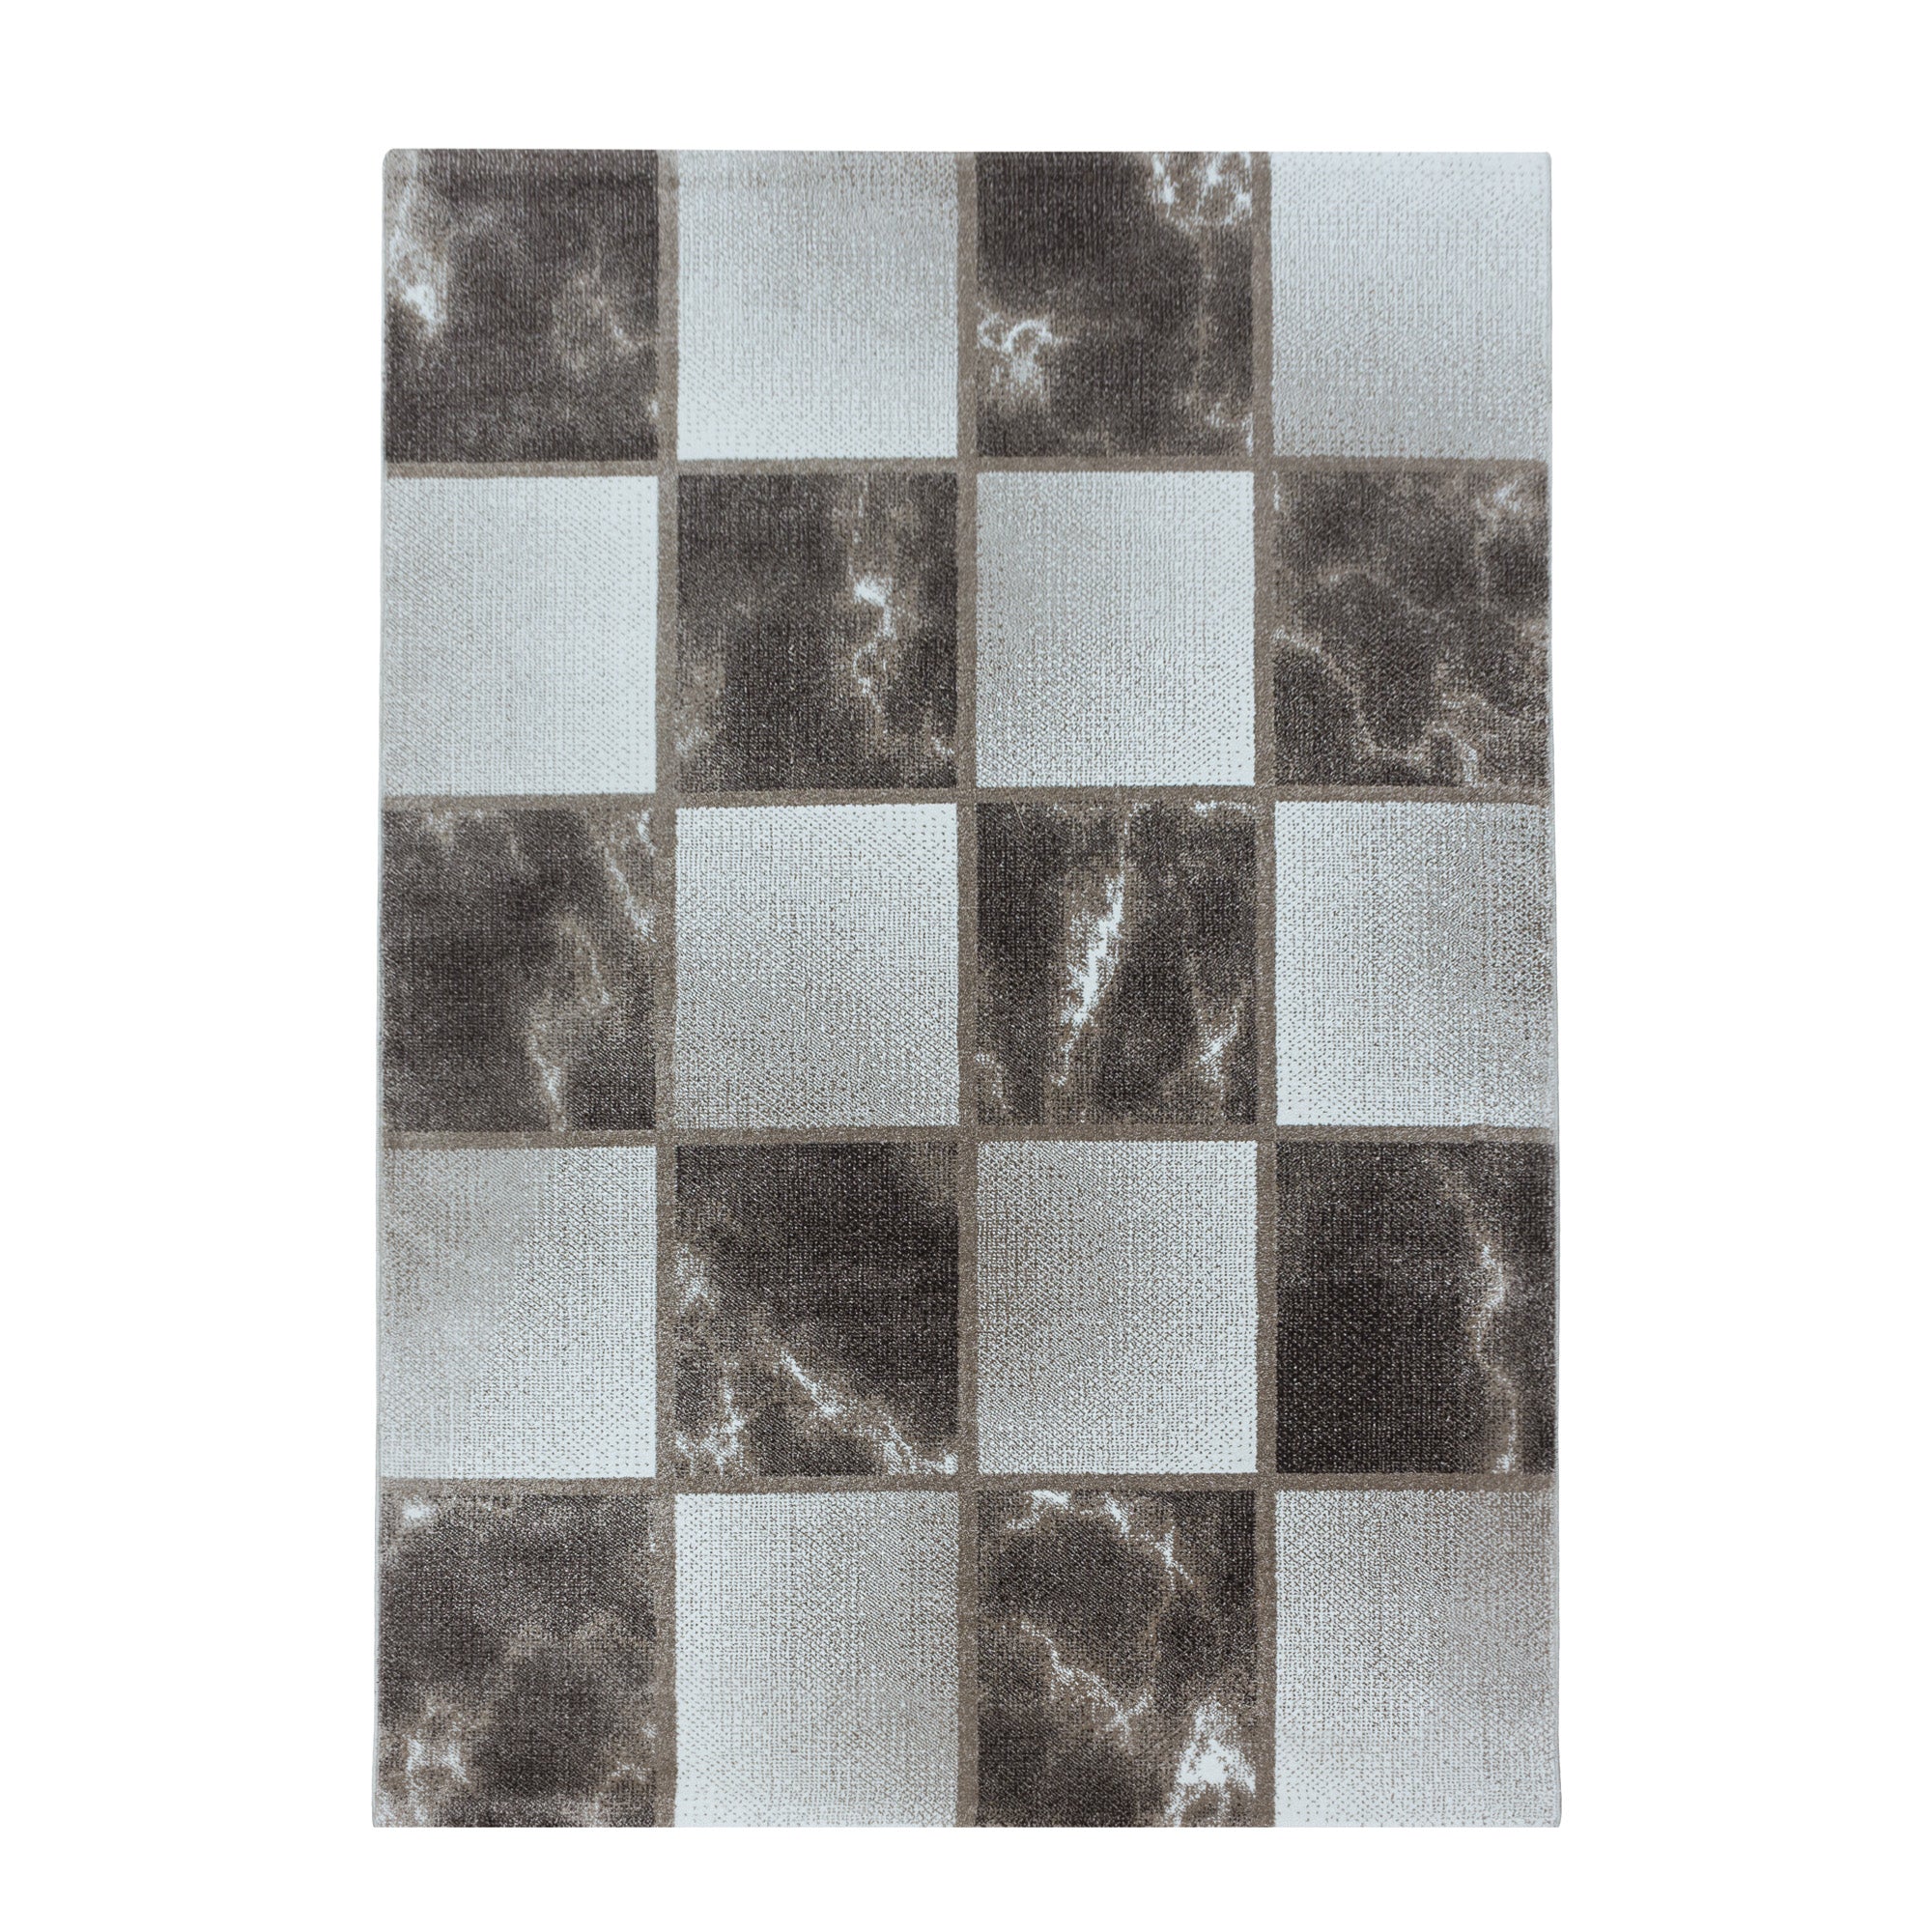 Kurzflor Teppich Braun Grau Quadrat Muster Marmoriert Wohnzimmerteppich Weich